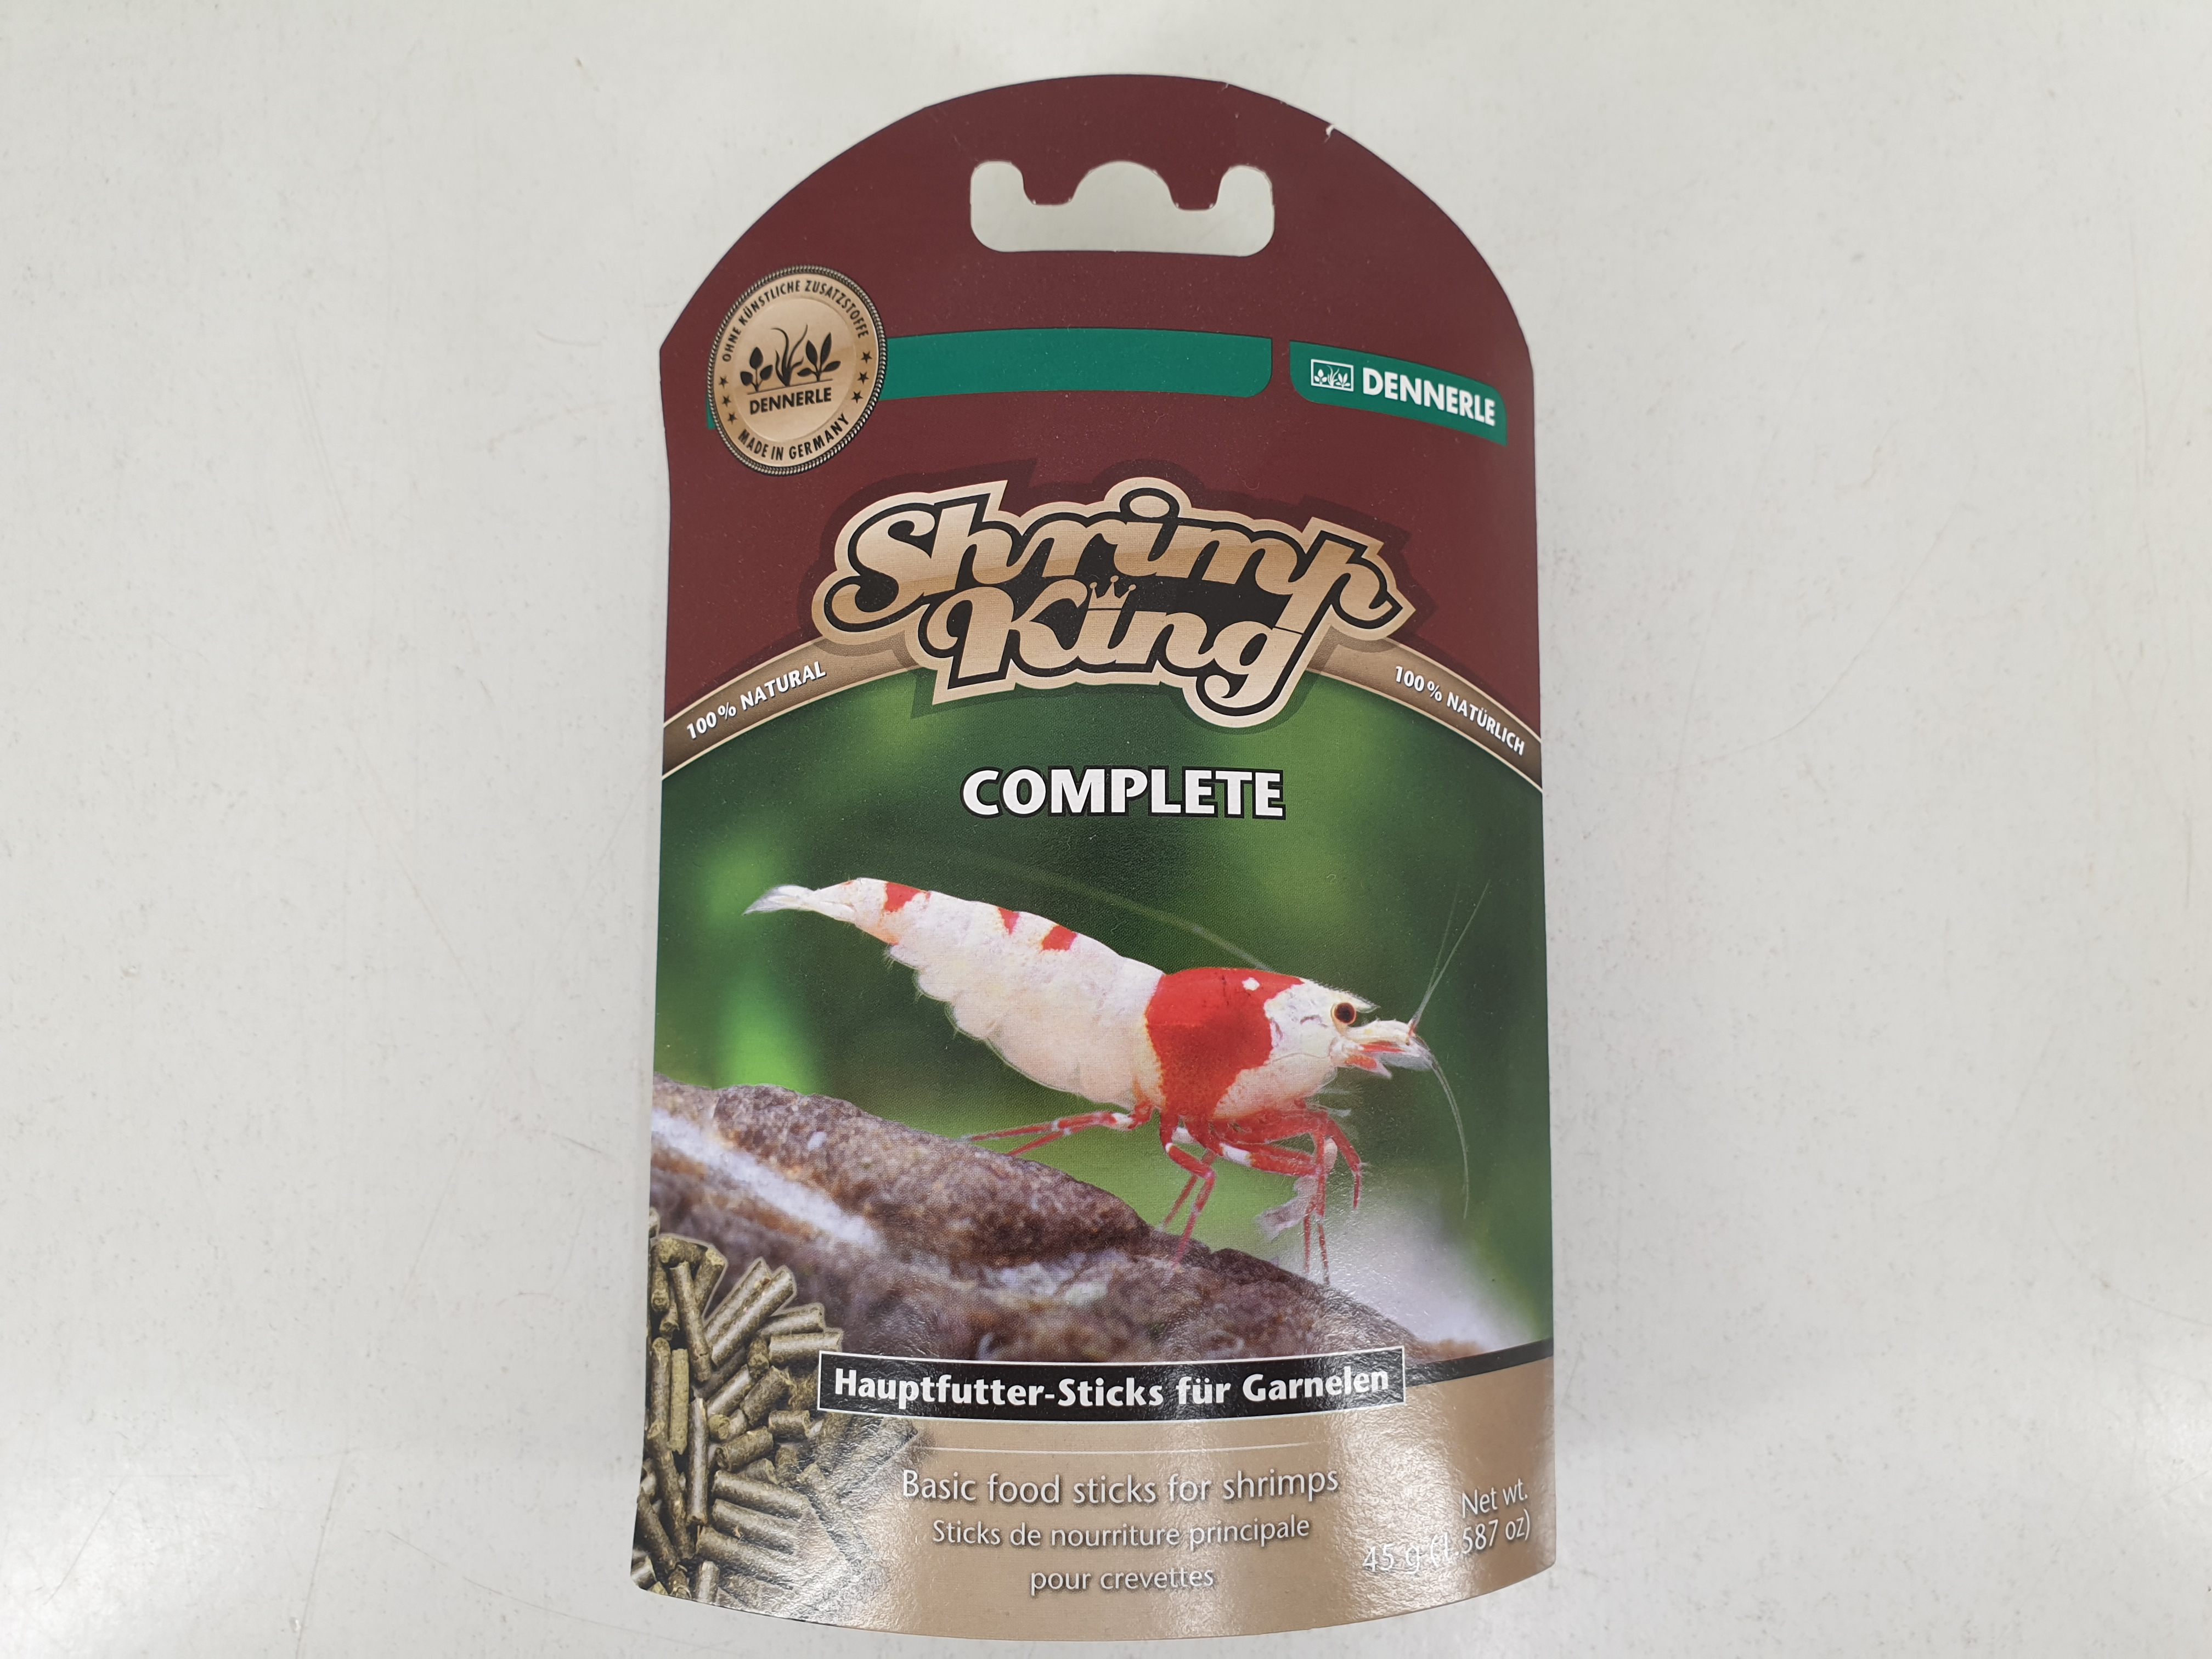 Dennerle Shrimp King Complete - Hauptfutter-Sticks für Garnelen 45g